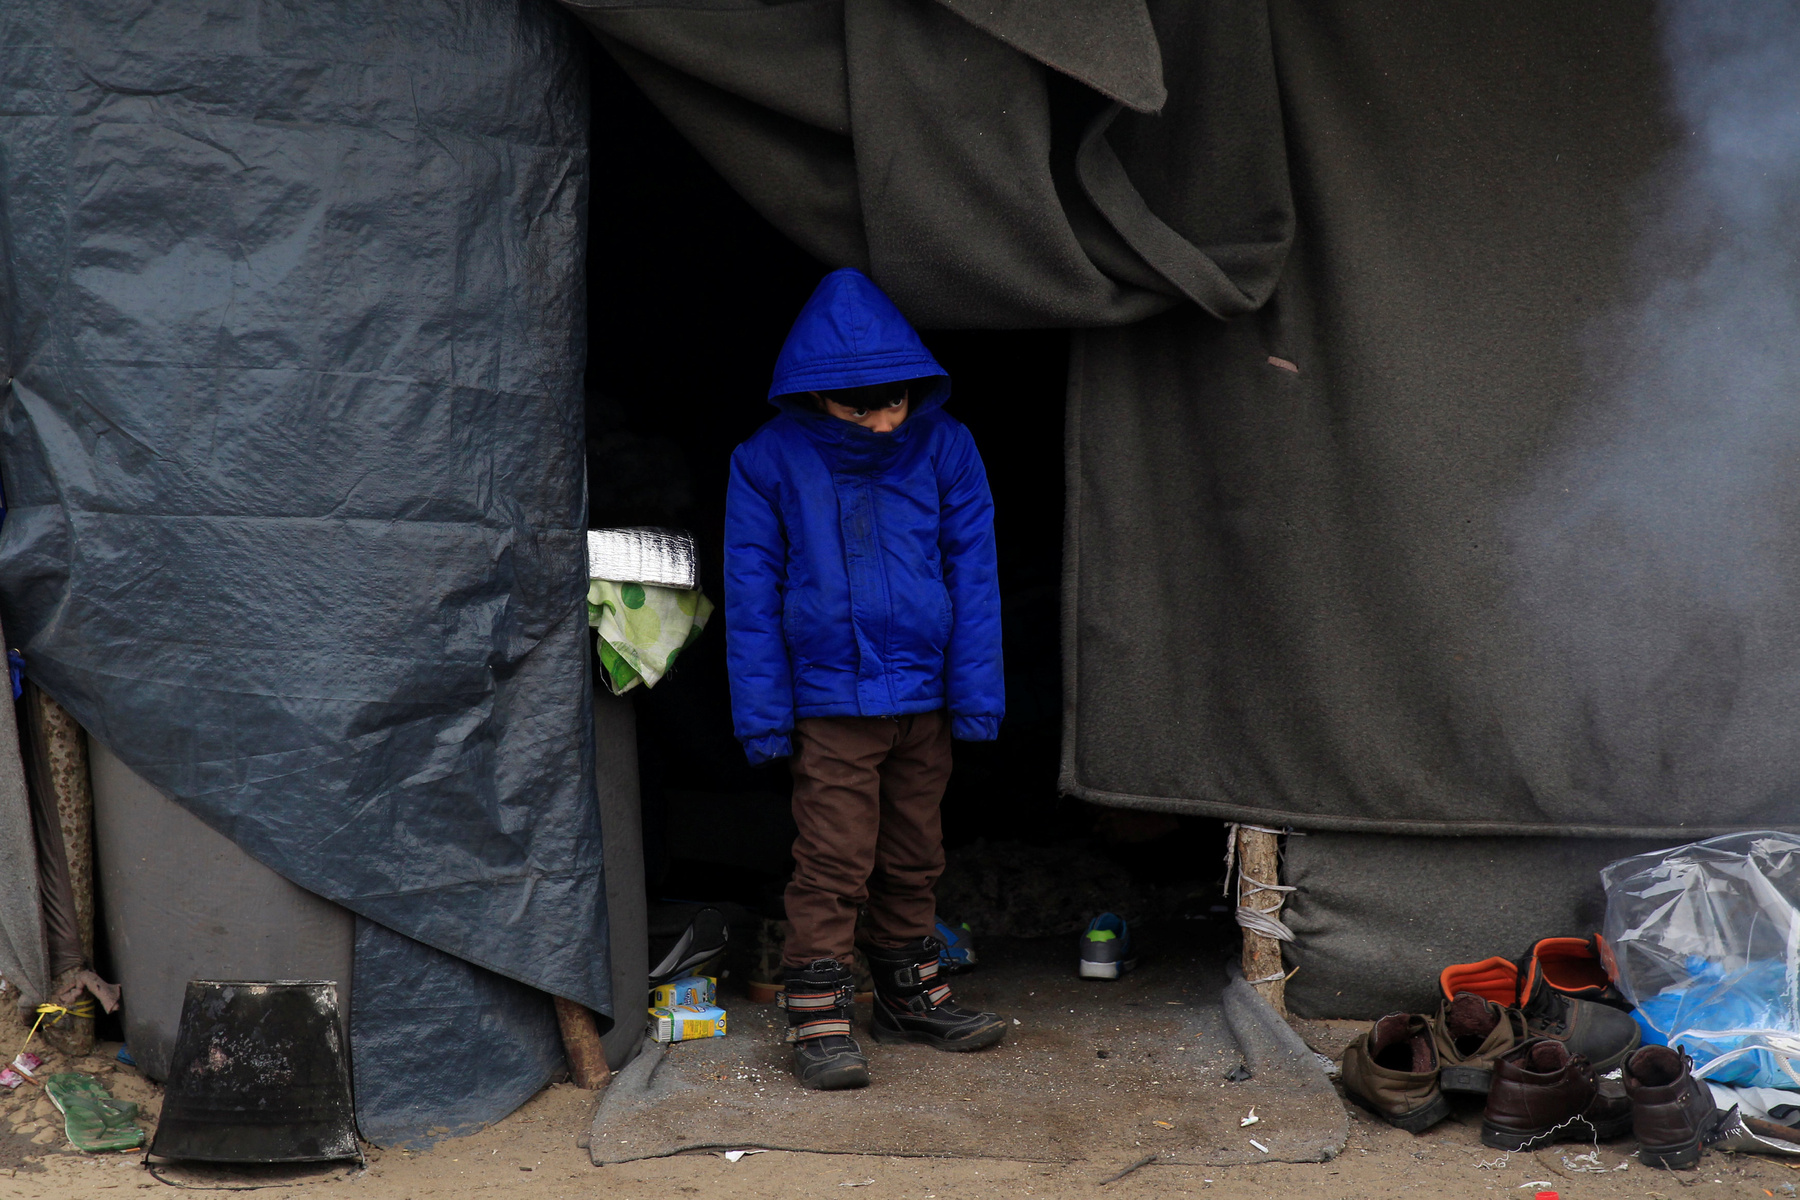 Menekült kisfiú a sátruk előtt Horgosnál. A magyar helyzetet az teszi különösen sokkolóvá, hogy a menekülteket nem kényszerből szállásolták el a hideg sátrakban. Körmenden például a helyszínen járva derítettük ki, hogy a bicskei menekülttábor fűthető szobáiból szállították ide az embereket, miután az amúgy viszonylag elfogadható körülményeket biztosító létesítményt bezárták.  